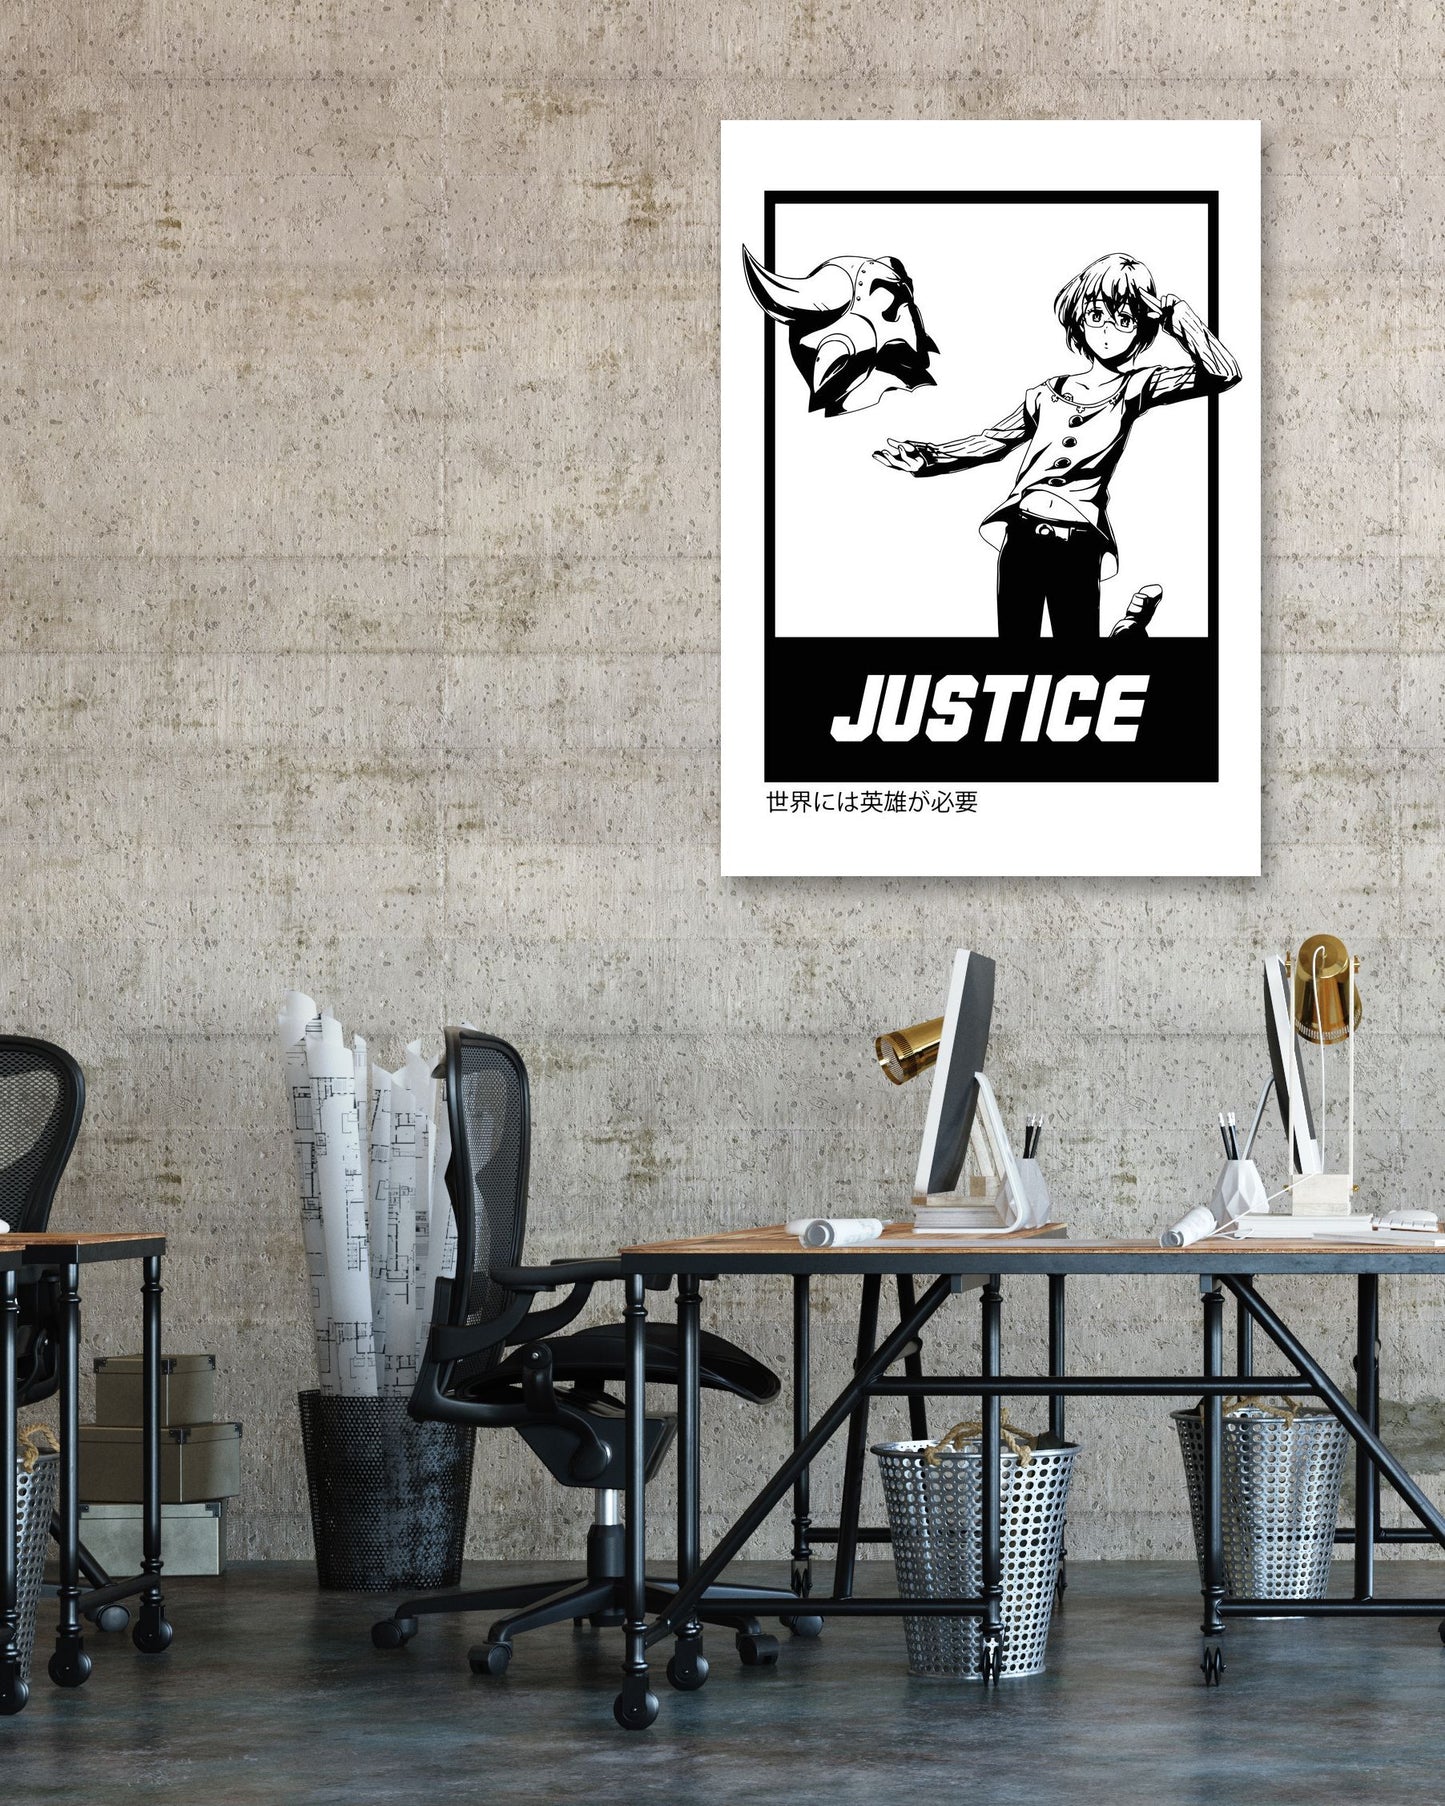 Justice 12 - @FreakCreator